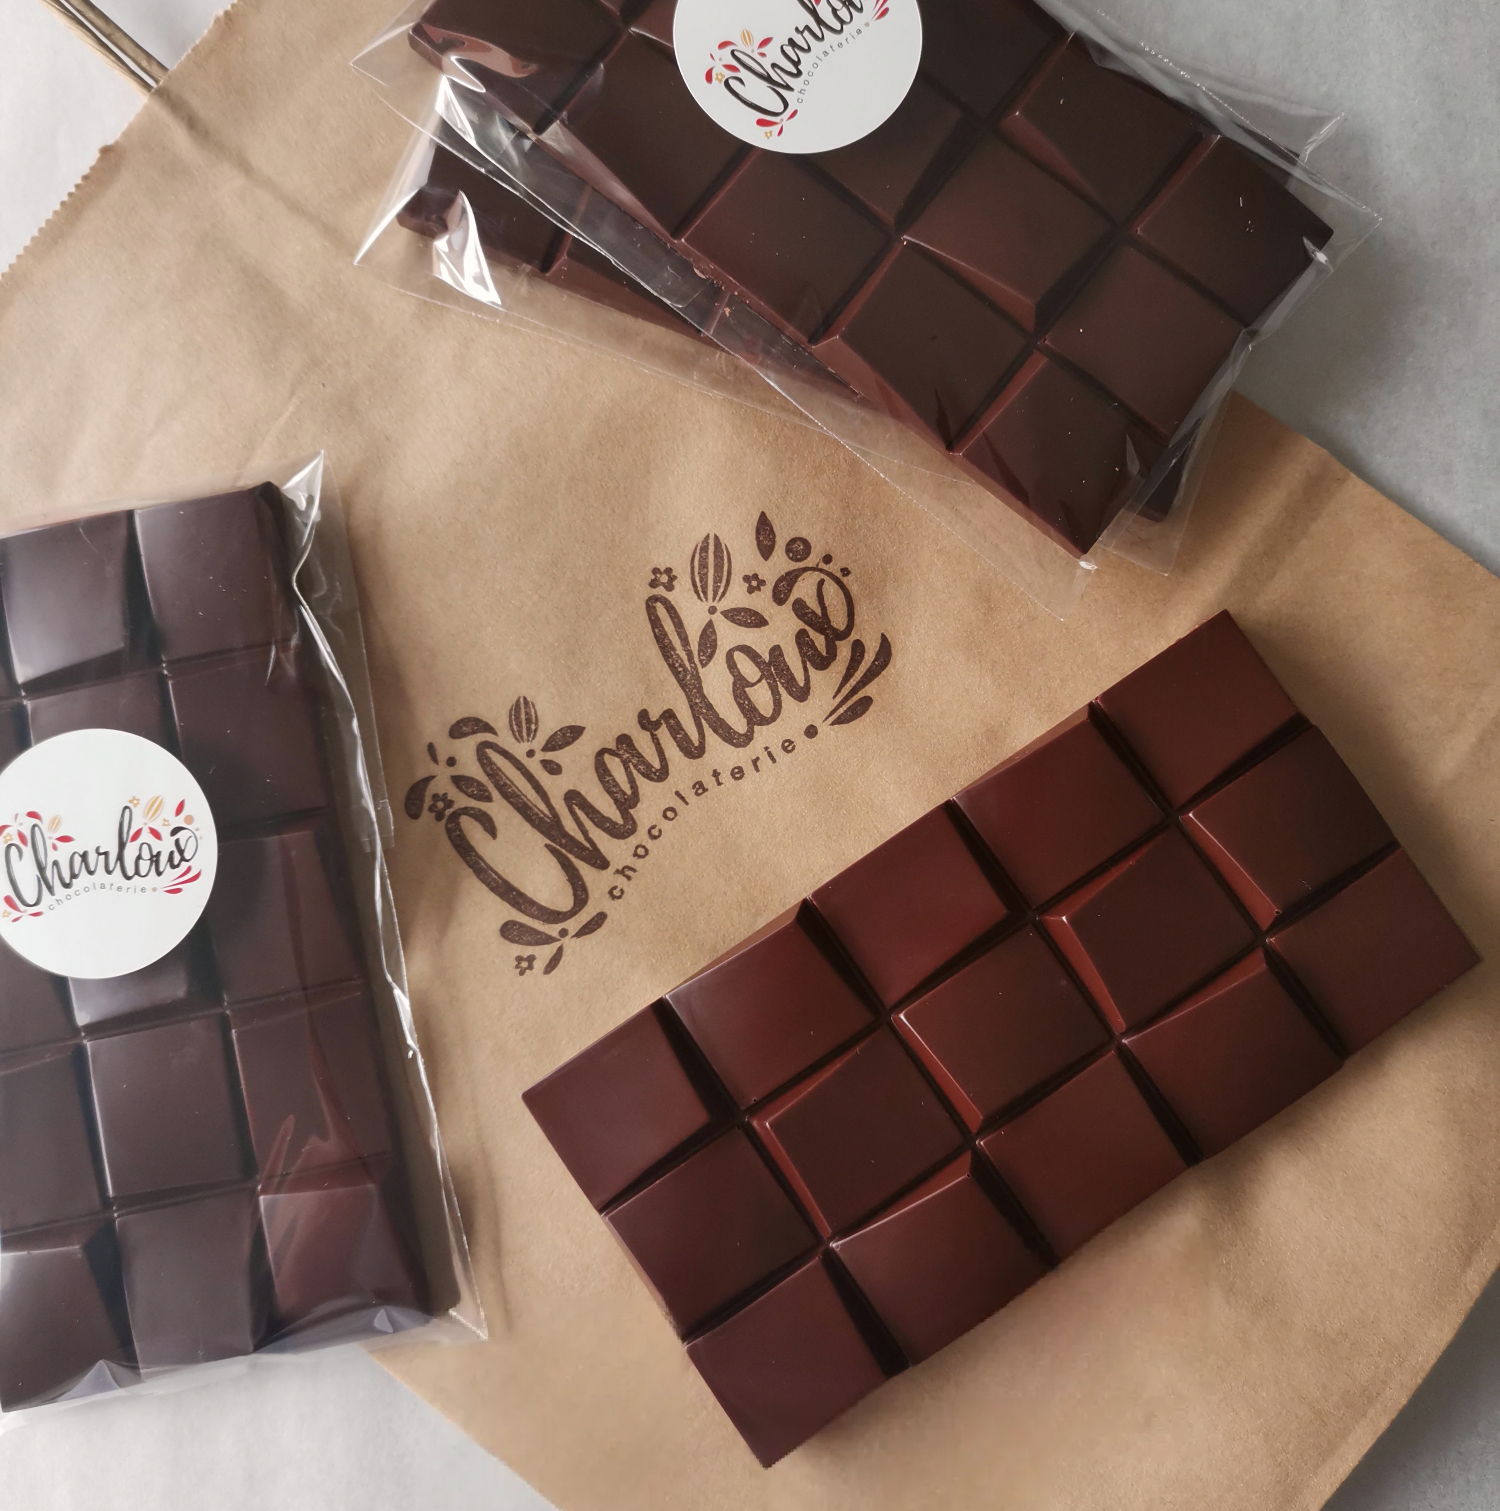 Tablette de chocolat noir bio 74% - Grand cru République dominicaine. Charloux chocolaterie